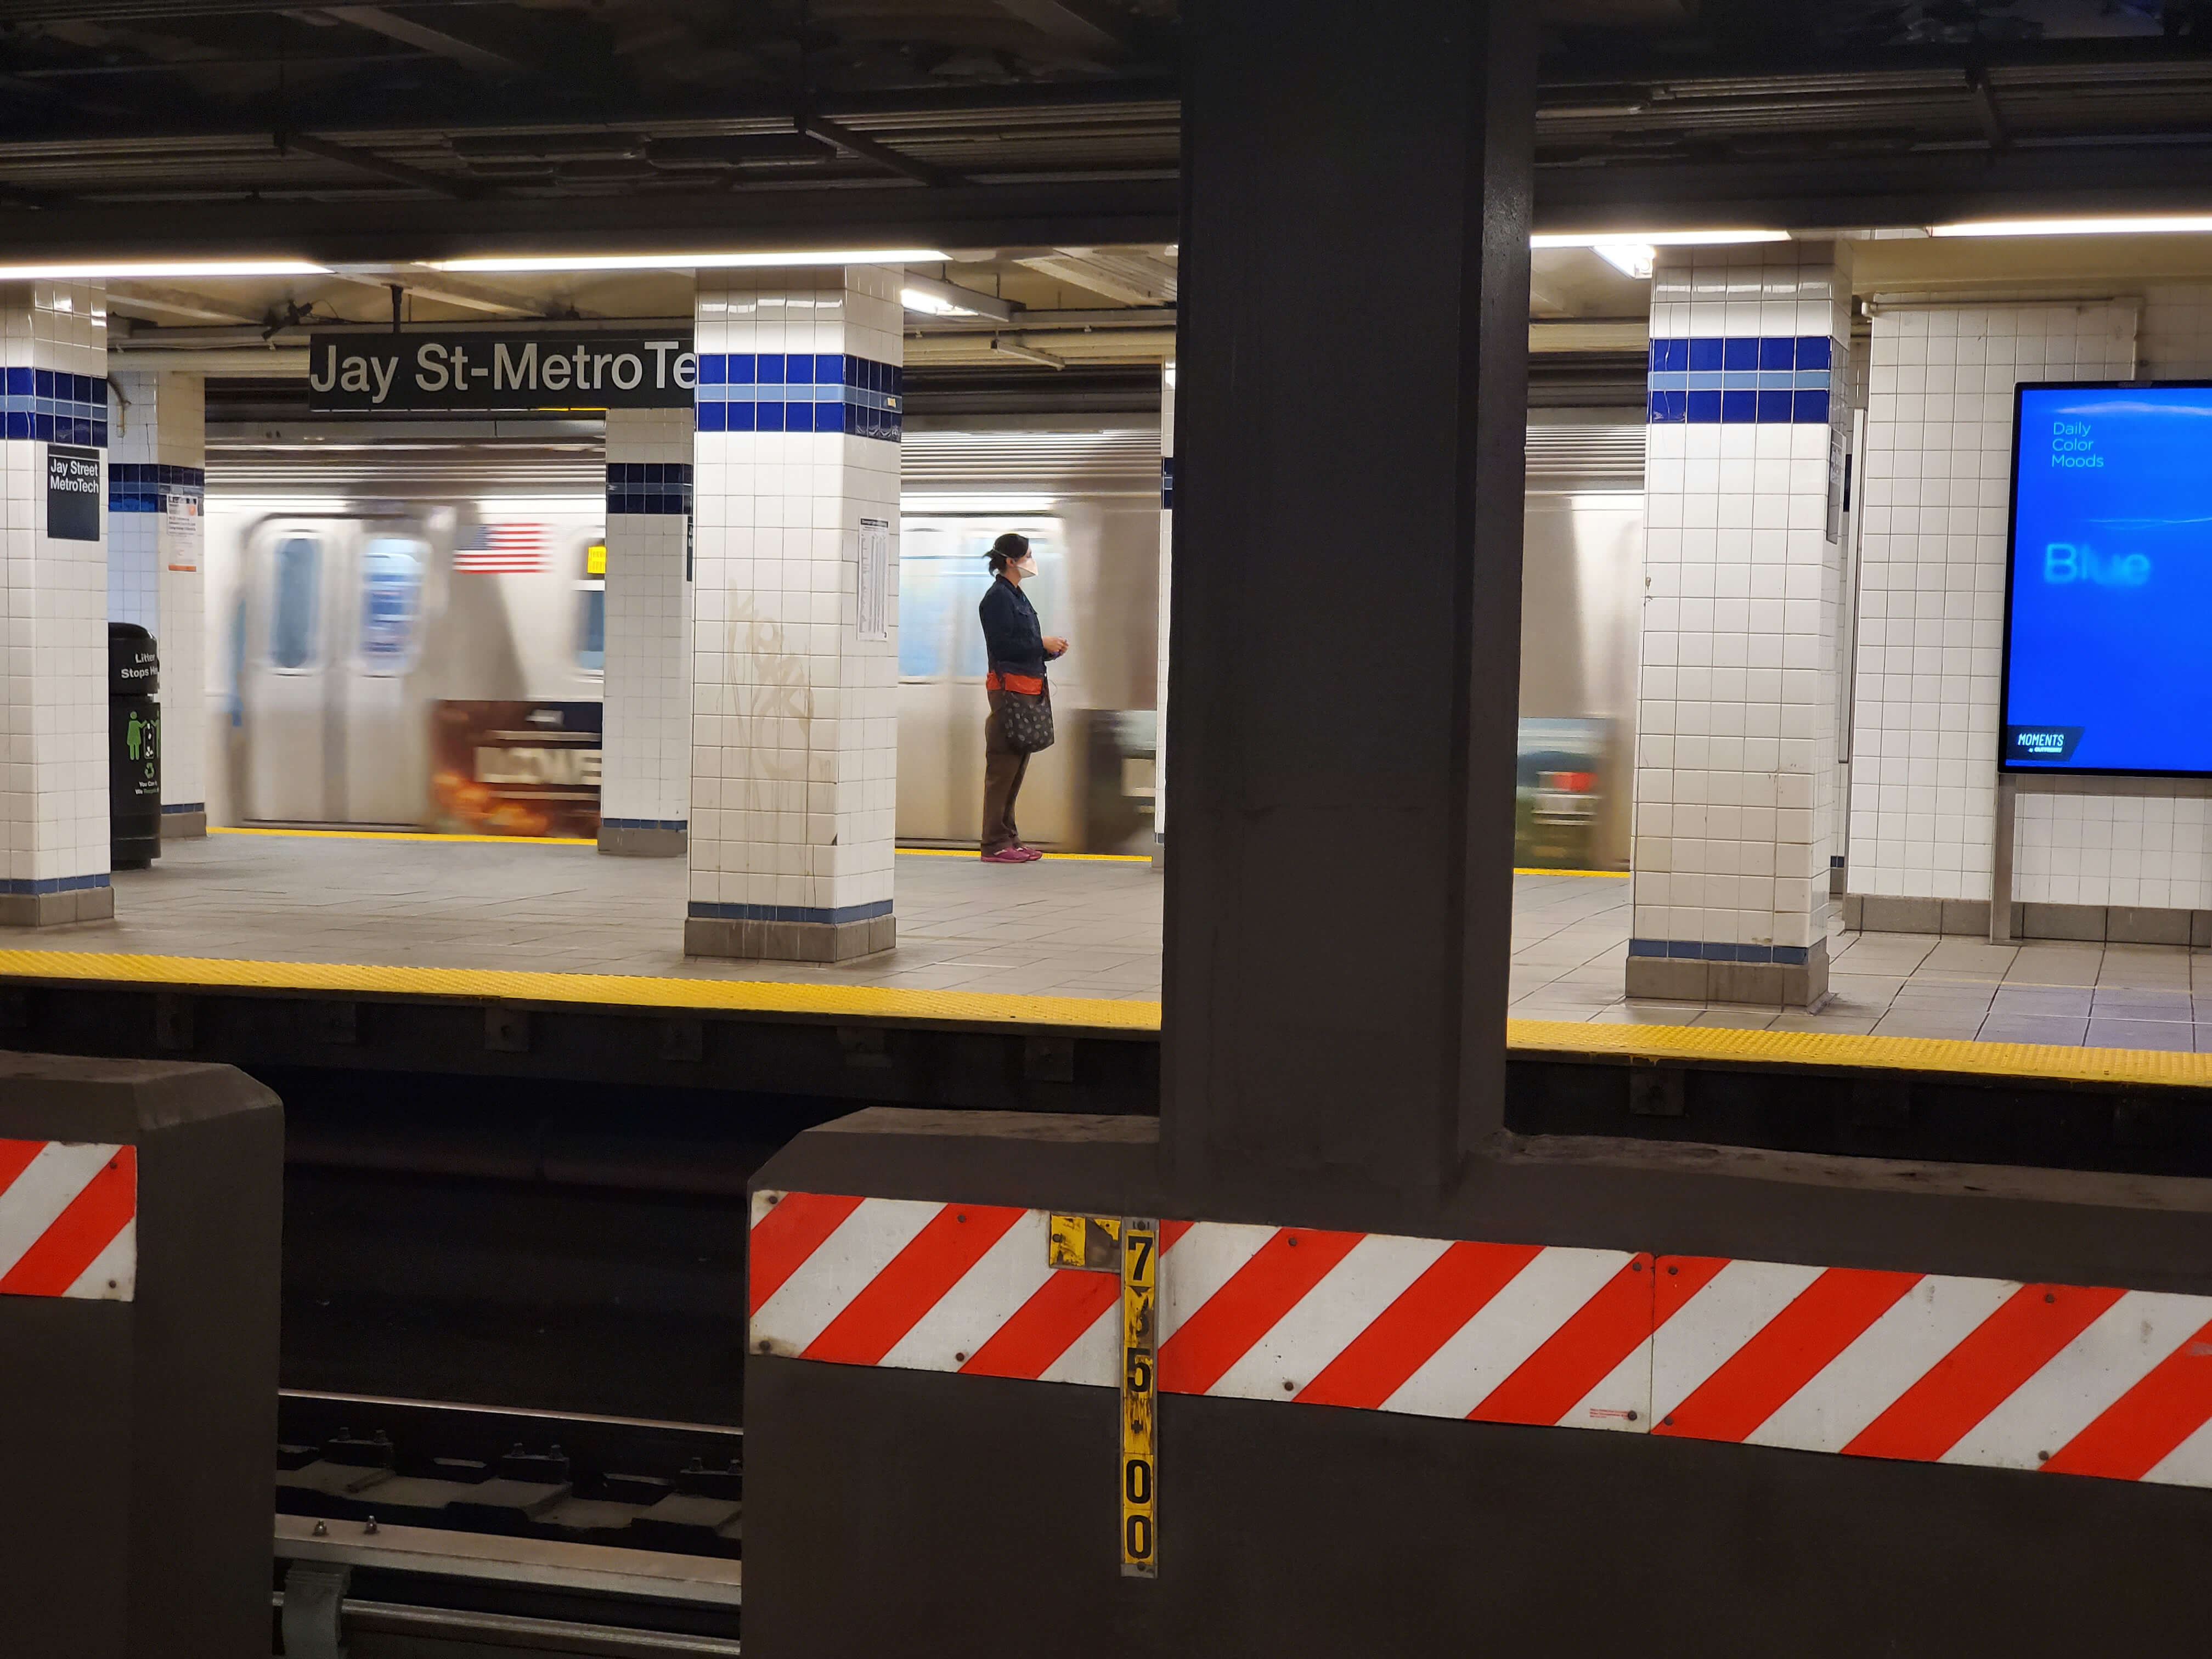 subway platform